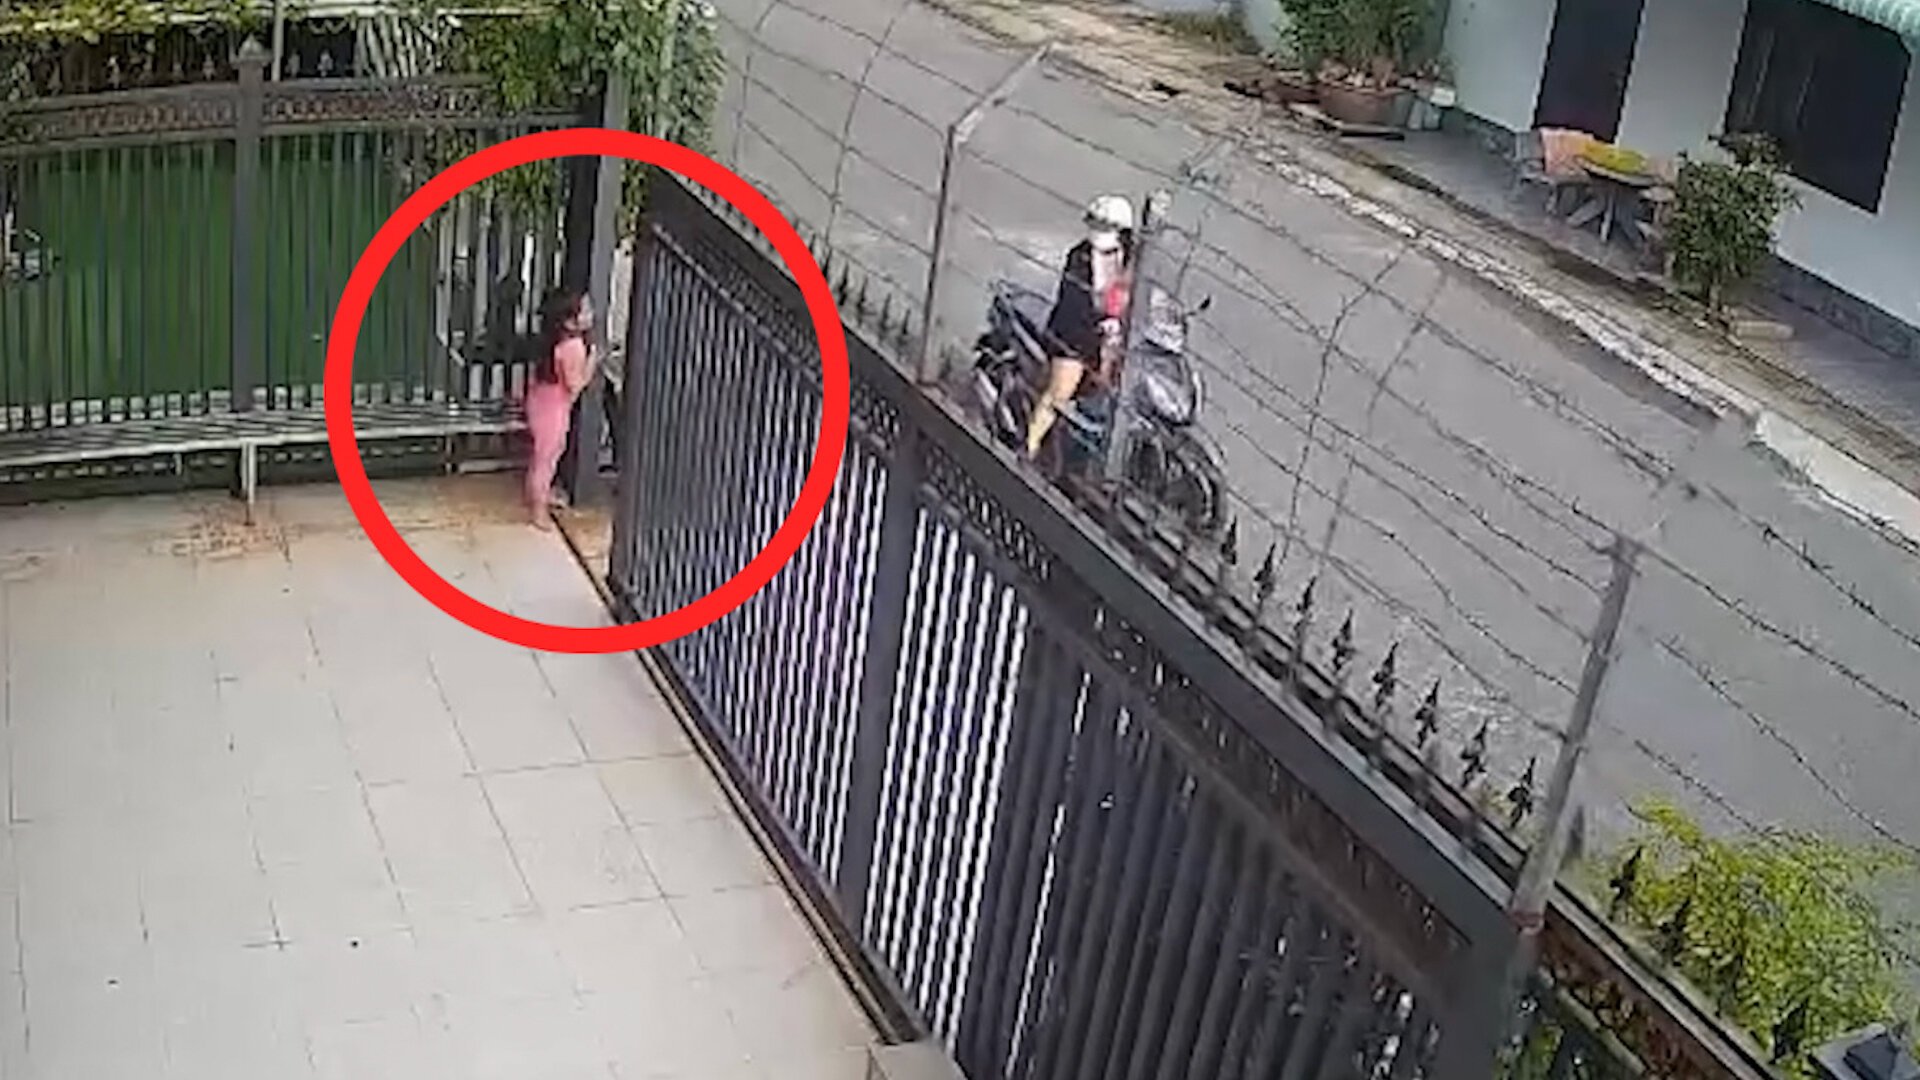 Bé gái 4 tuổi ở Đồng Nai bị cửa tự động kẹp ngang người